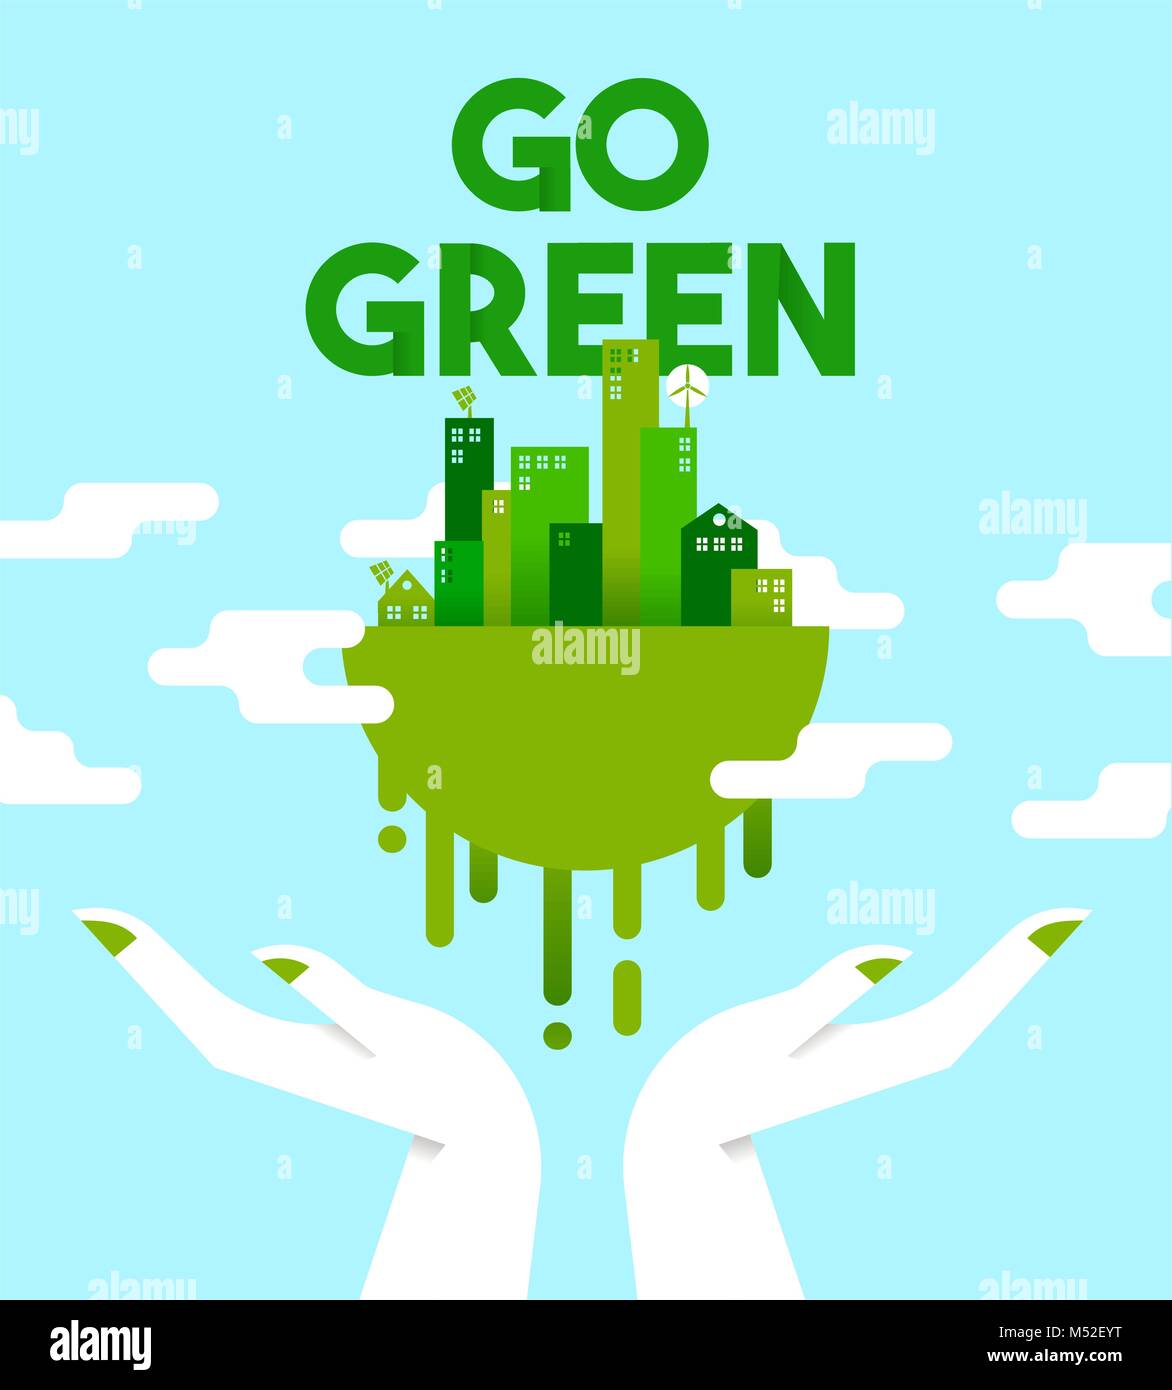 Go Green concept illustration, les mains tenant la planète terre avec des maisons et des tours de télévision style art pour la protection de l'environnement. Vecteur EPS10. Illustration de Vecteur